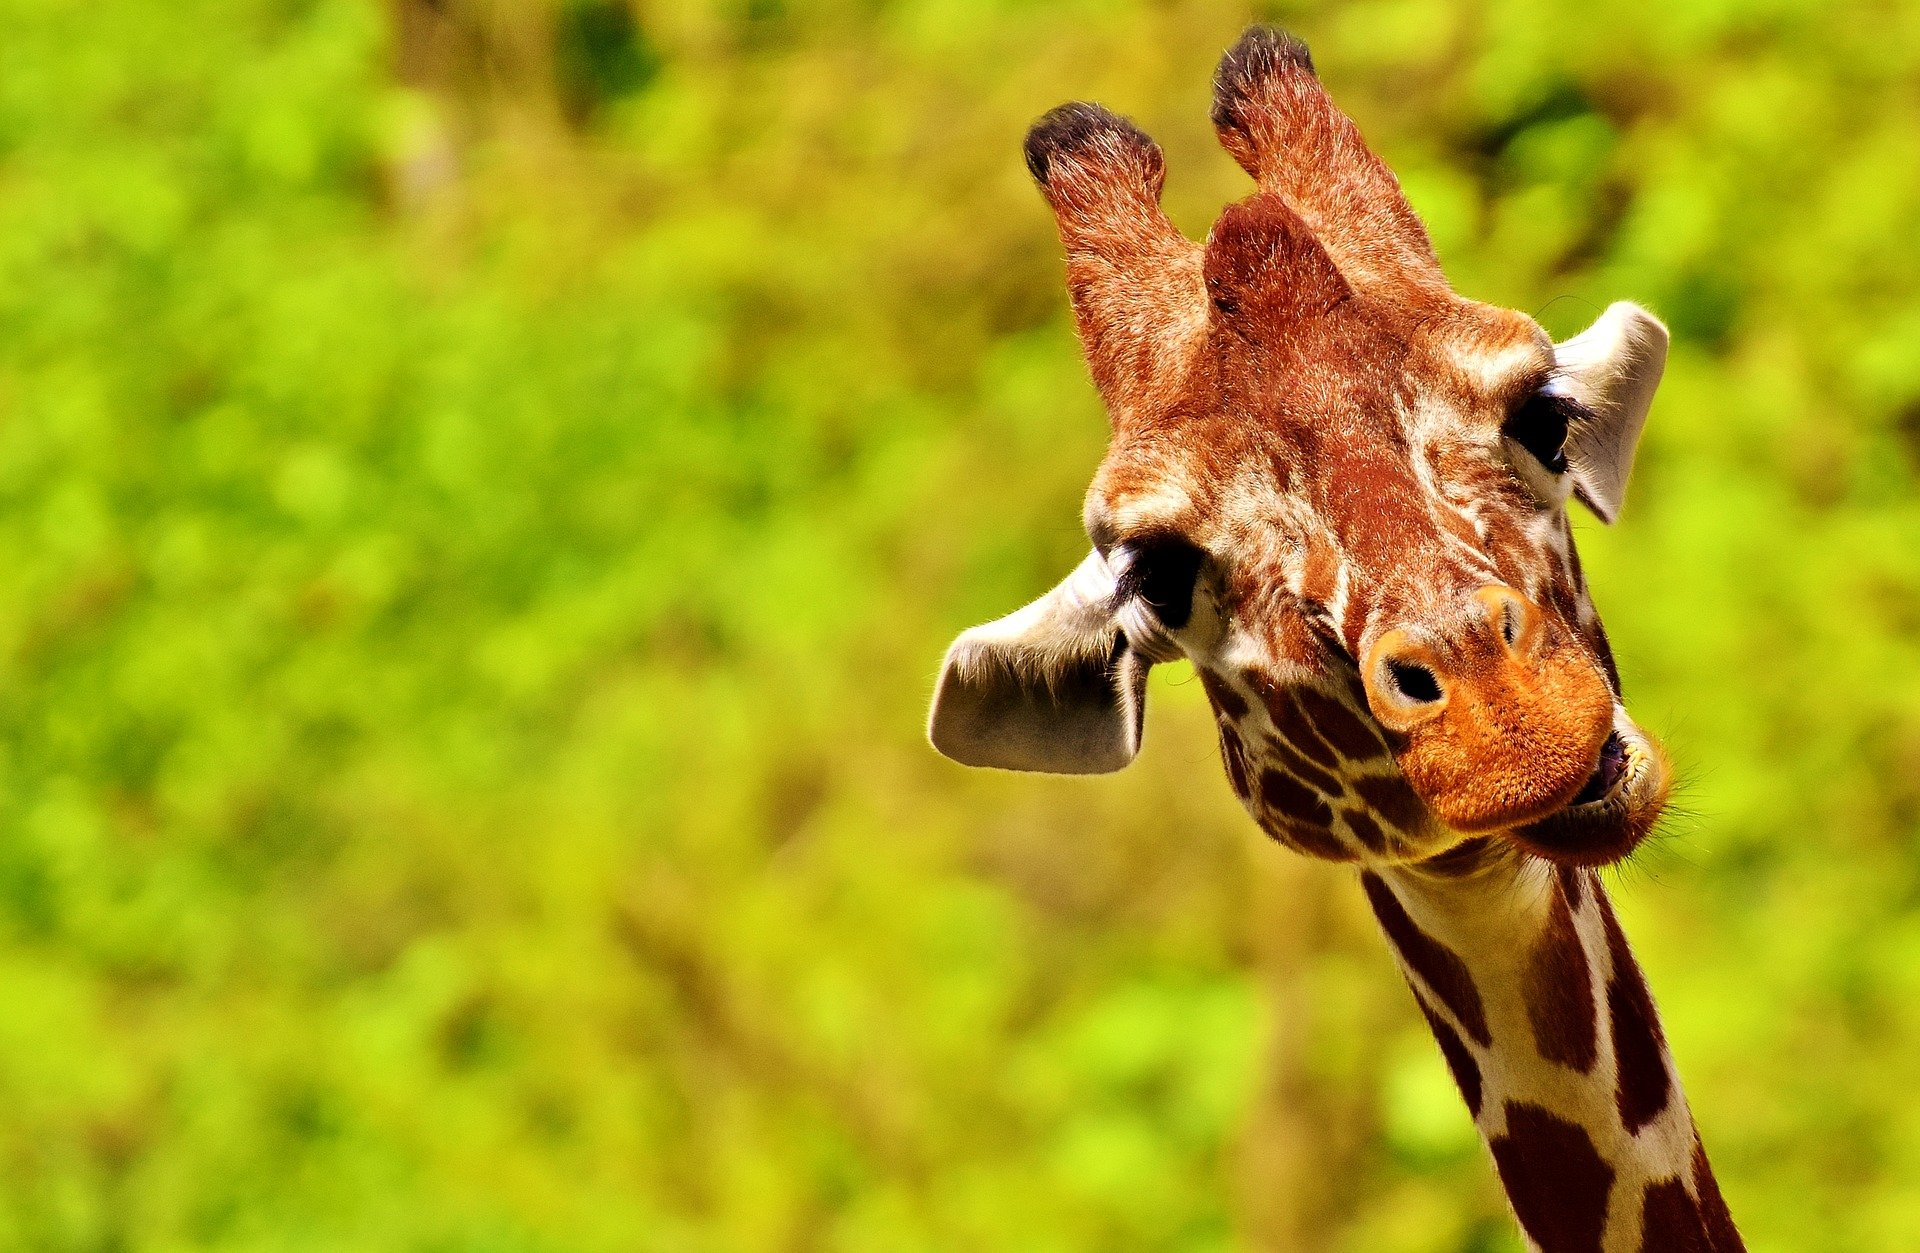 Giraffe - giraffe